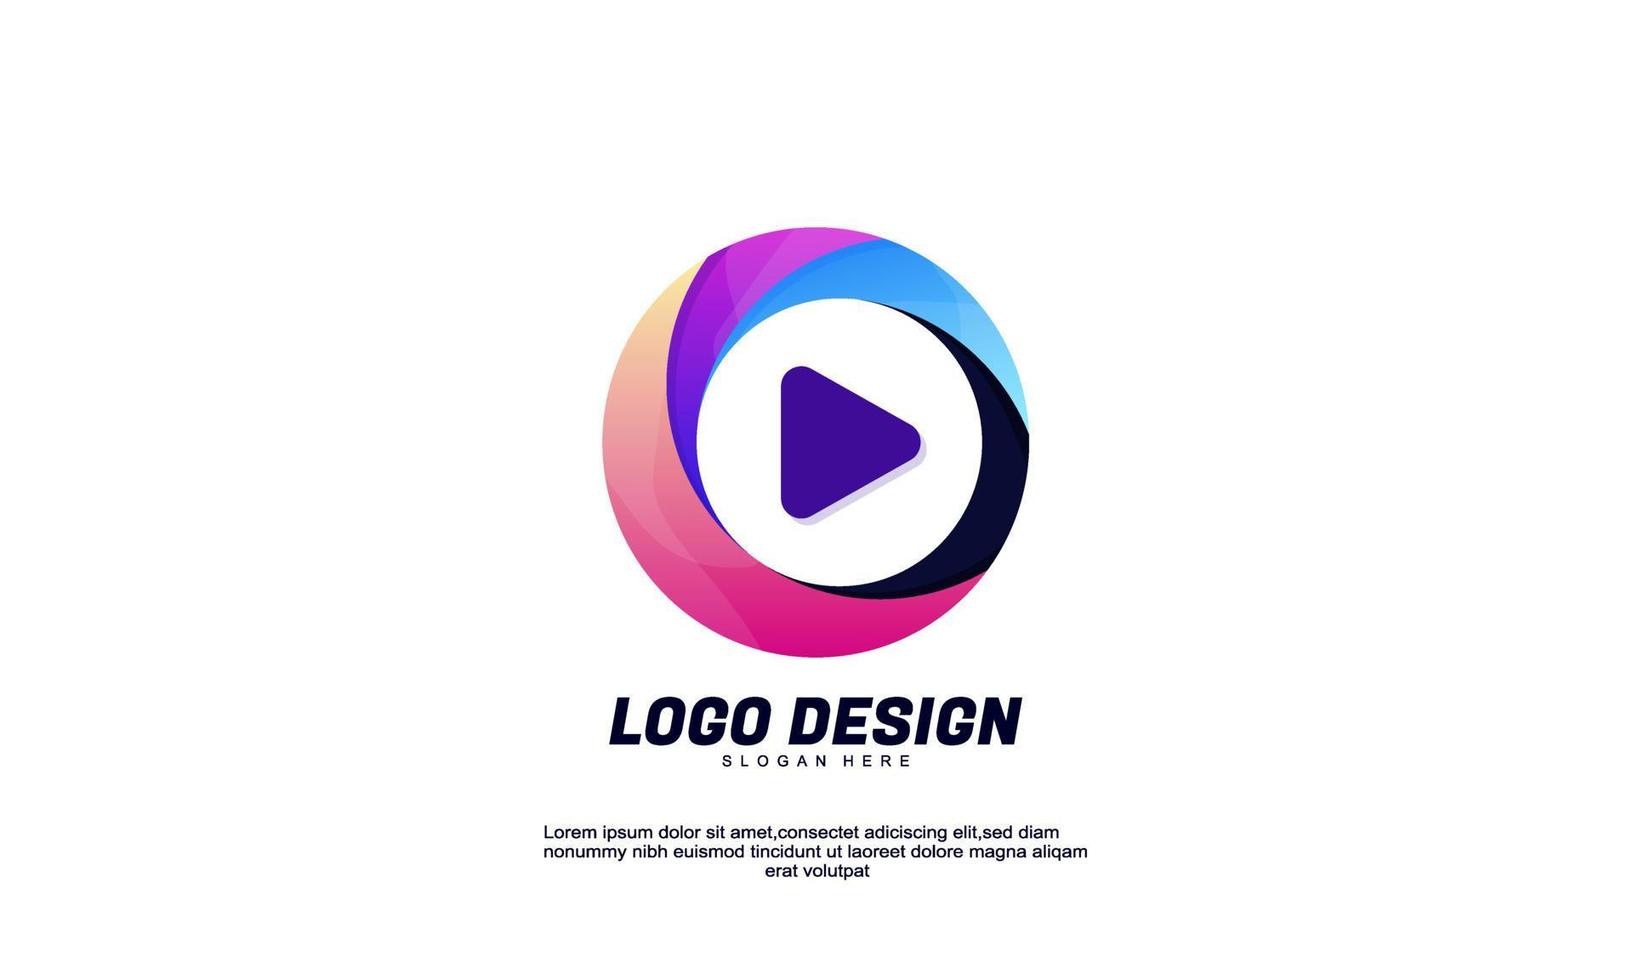 Lager Vektor abstrakte kreative Logo-Idee-Kreis und Play-Medien für Markenidentitätsunternehmen oder Farbverlaufsdesign-Vorlage für Unternehmen